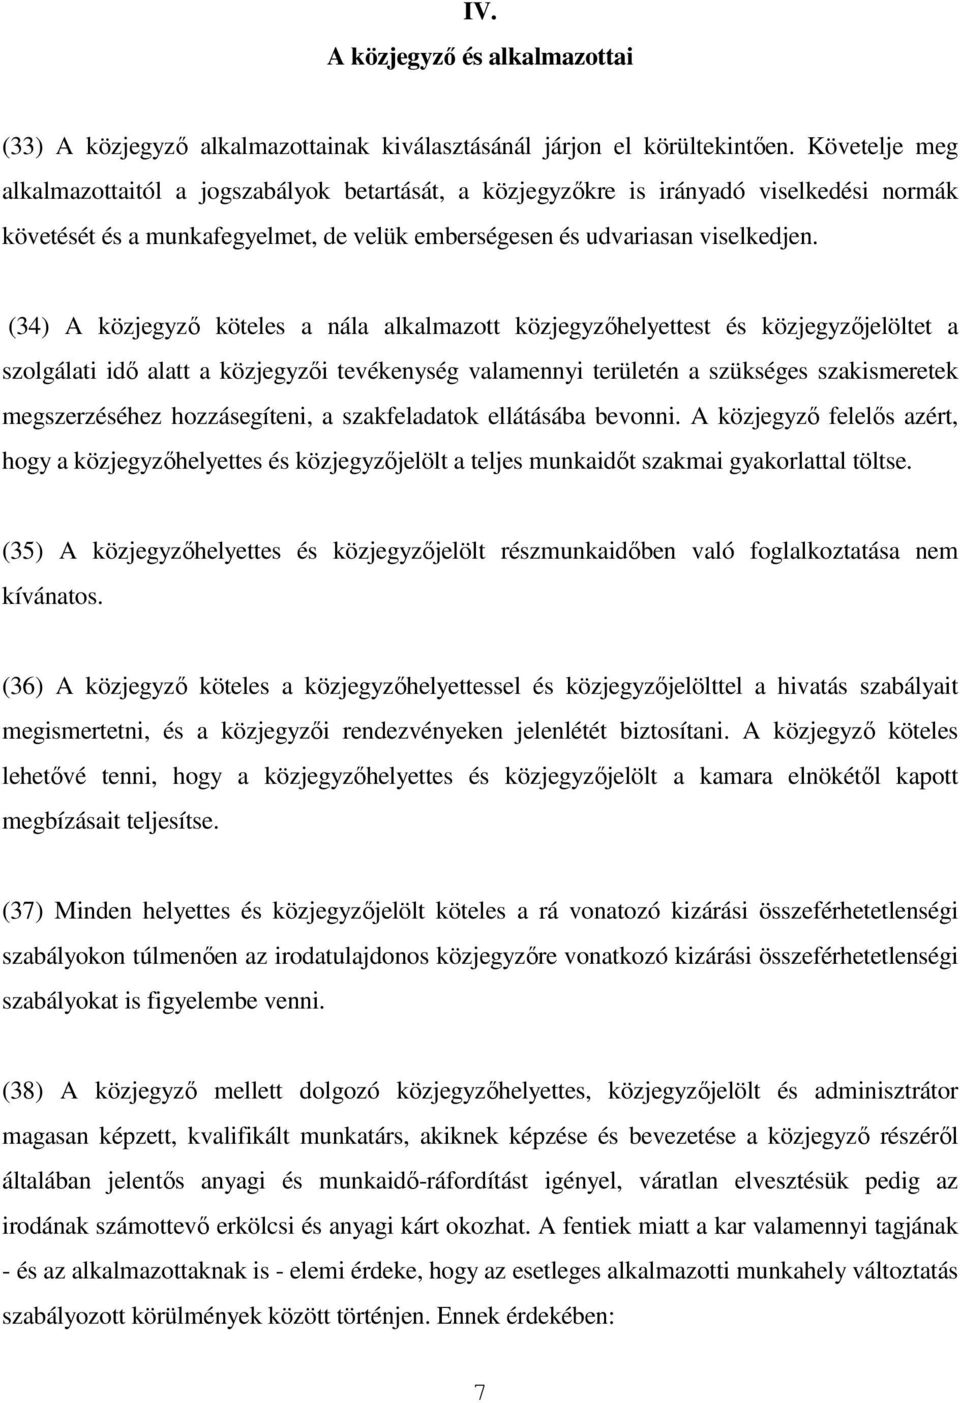 A Magyar Országos Közjegyzői Kamara 13. számú Iránymutatása 1 a Magyar  Közjegyzőség Etikai Szabálykönyvéről módosításokkal egységes szerkezetben 2  - PDF Ingyenes letöltés